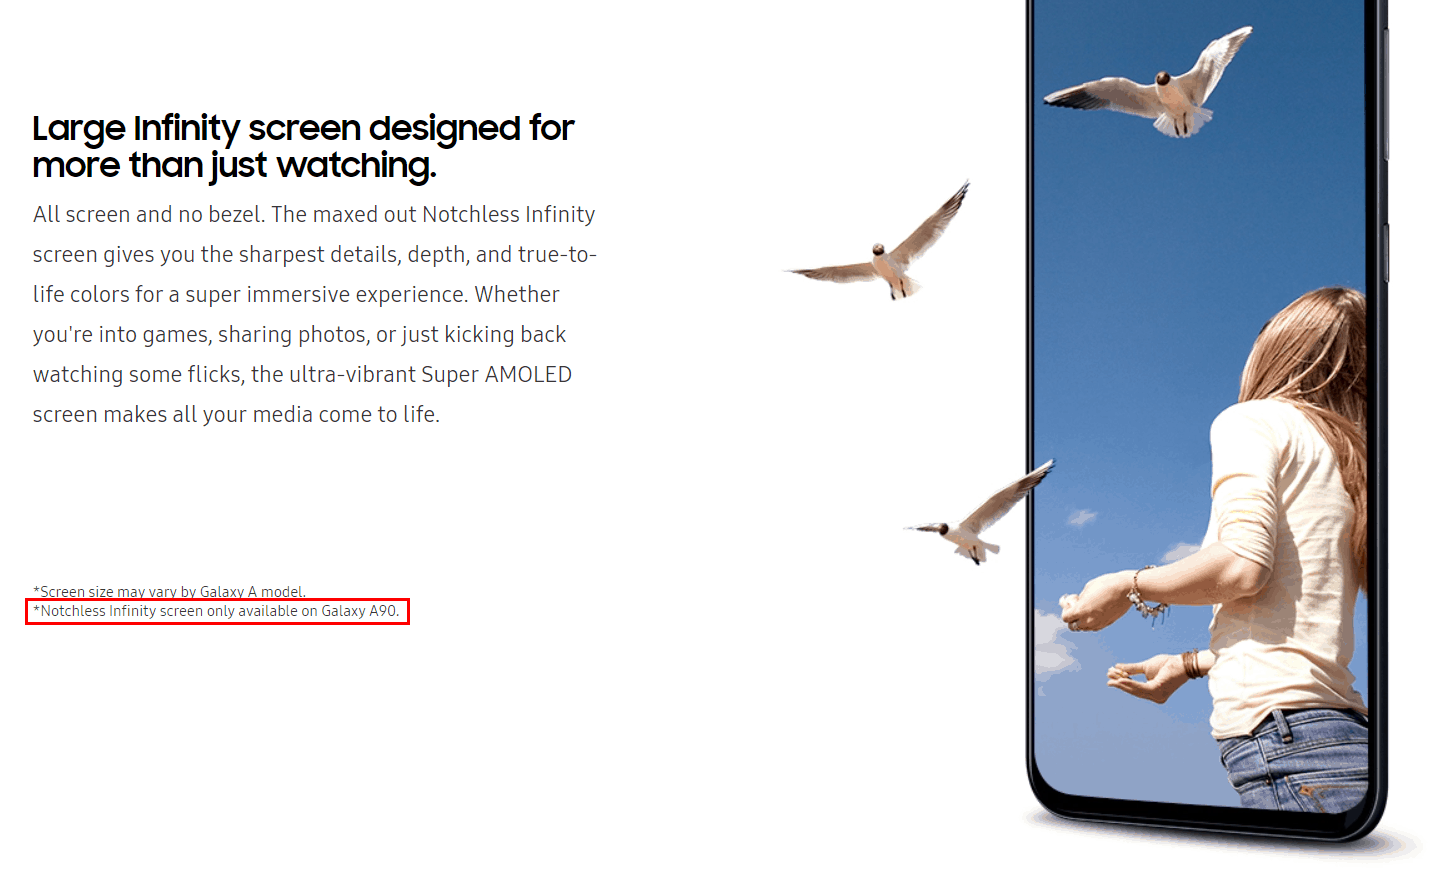 Samsung vô tình xác
nhận Galaxy A90 sẽ có màn hình New Infinity không có nốt
ruồi